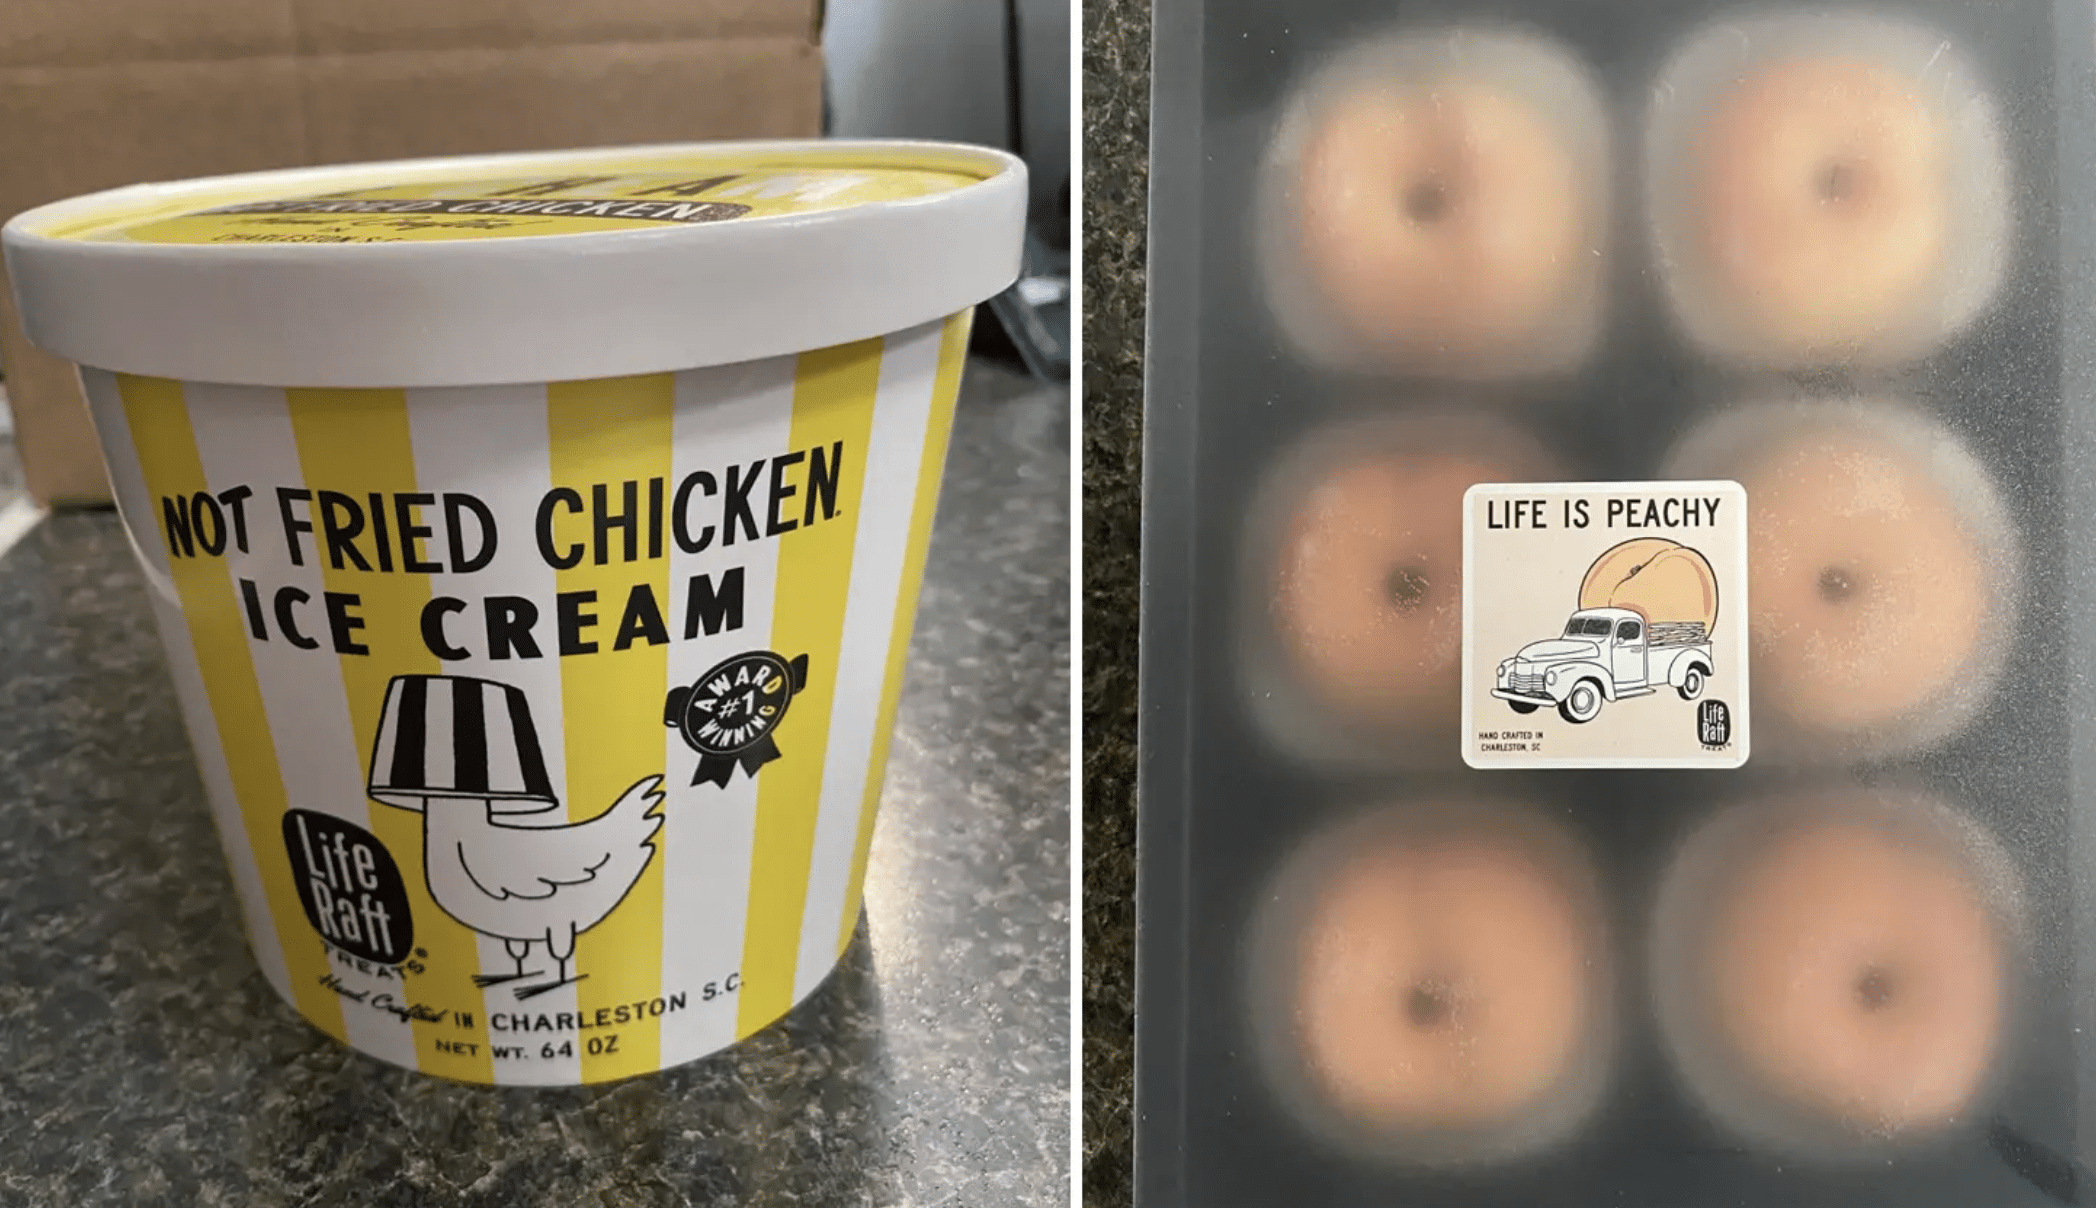 Not fried chicken' ice cream recalled